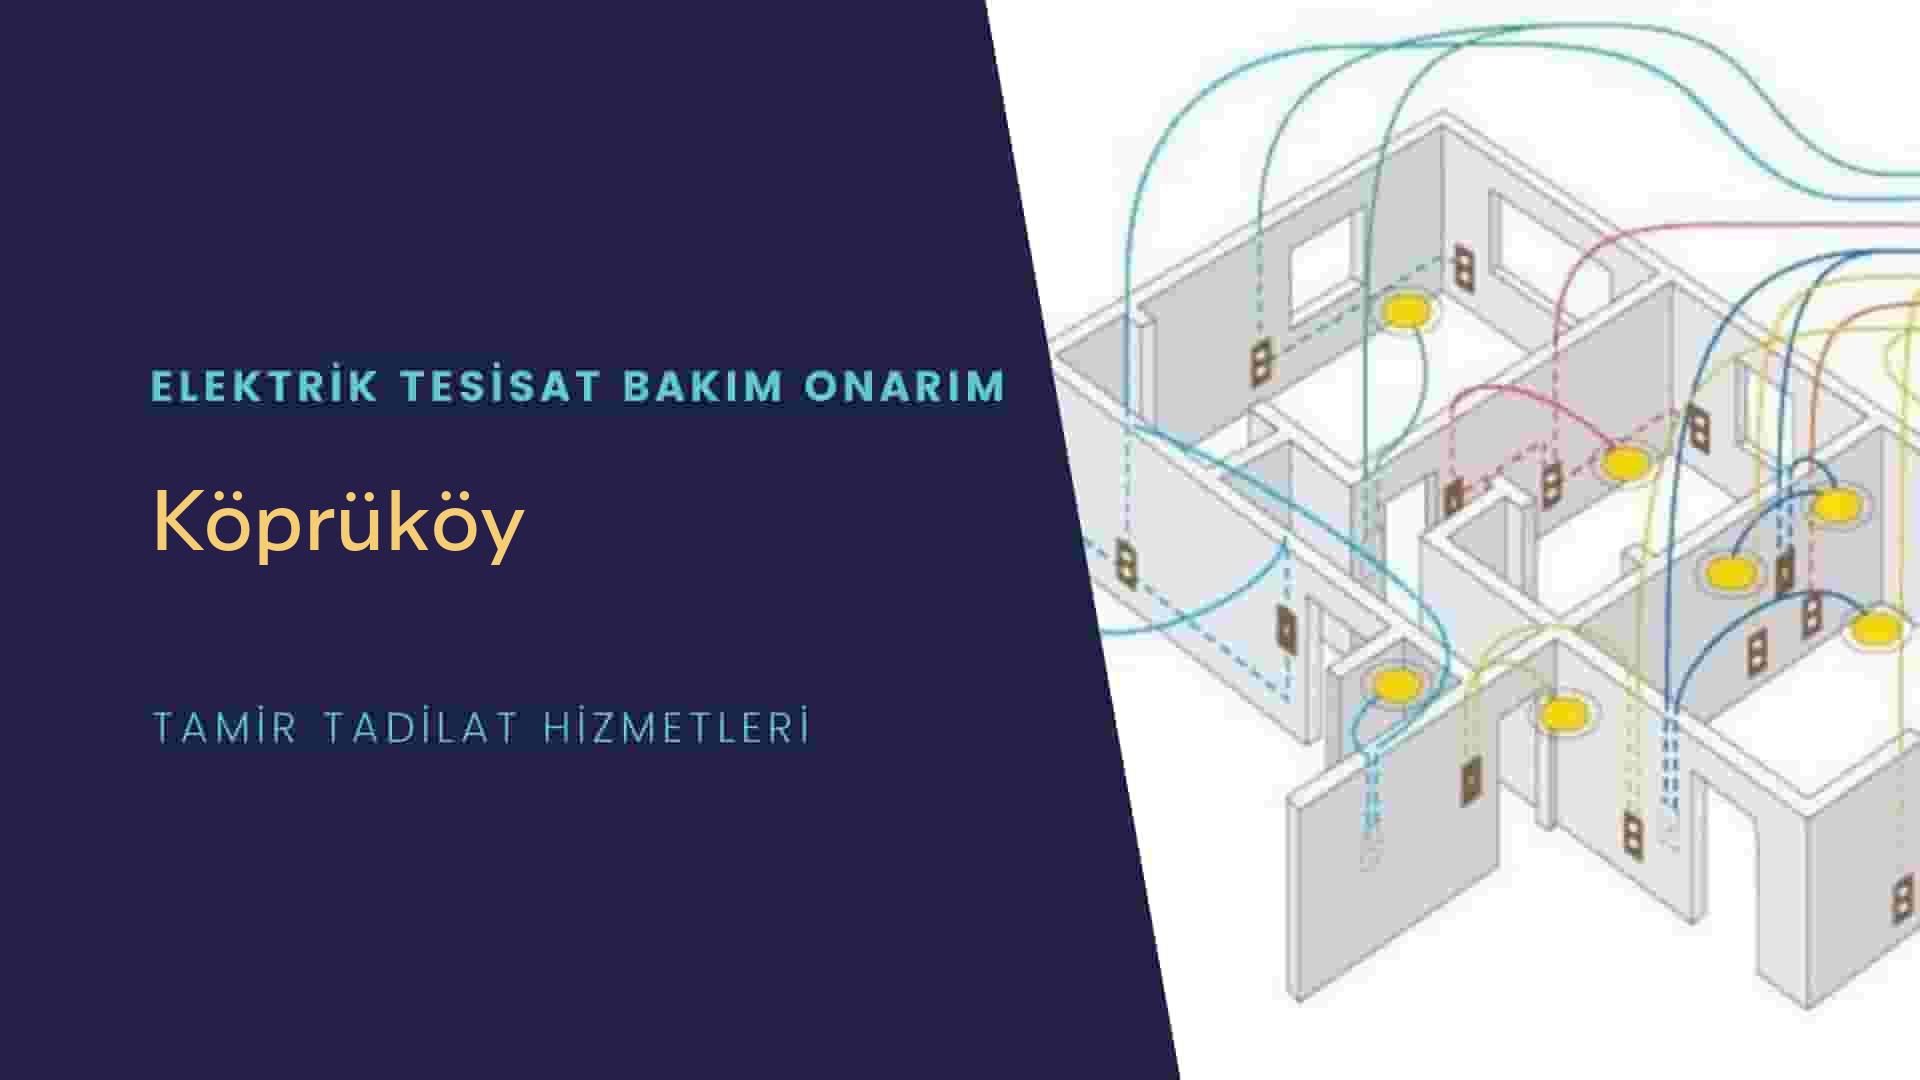 Köprüköy'de elektrik tesisatı ustalarımı arıyorsunuz doğru adrestenizi Köprüköy elektrik tesisatı ustalarımız 7/24 sizlere hizmet vermekten mutluluk duyar.